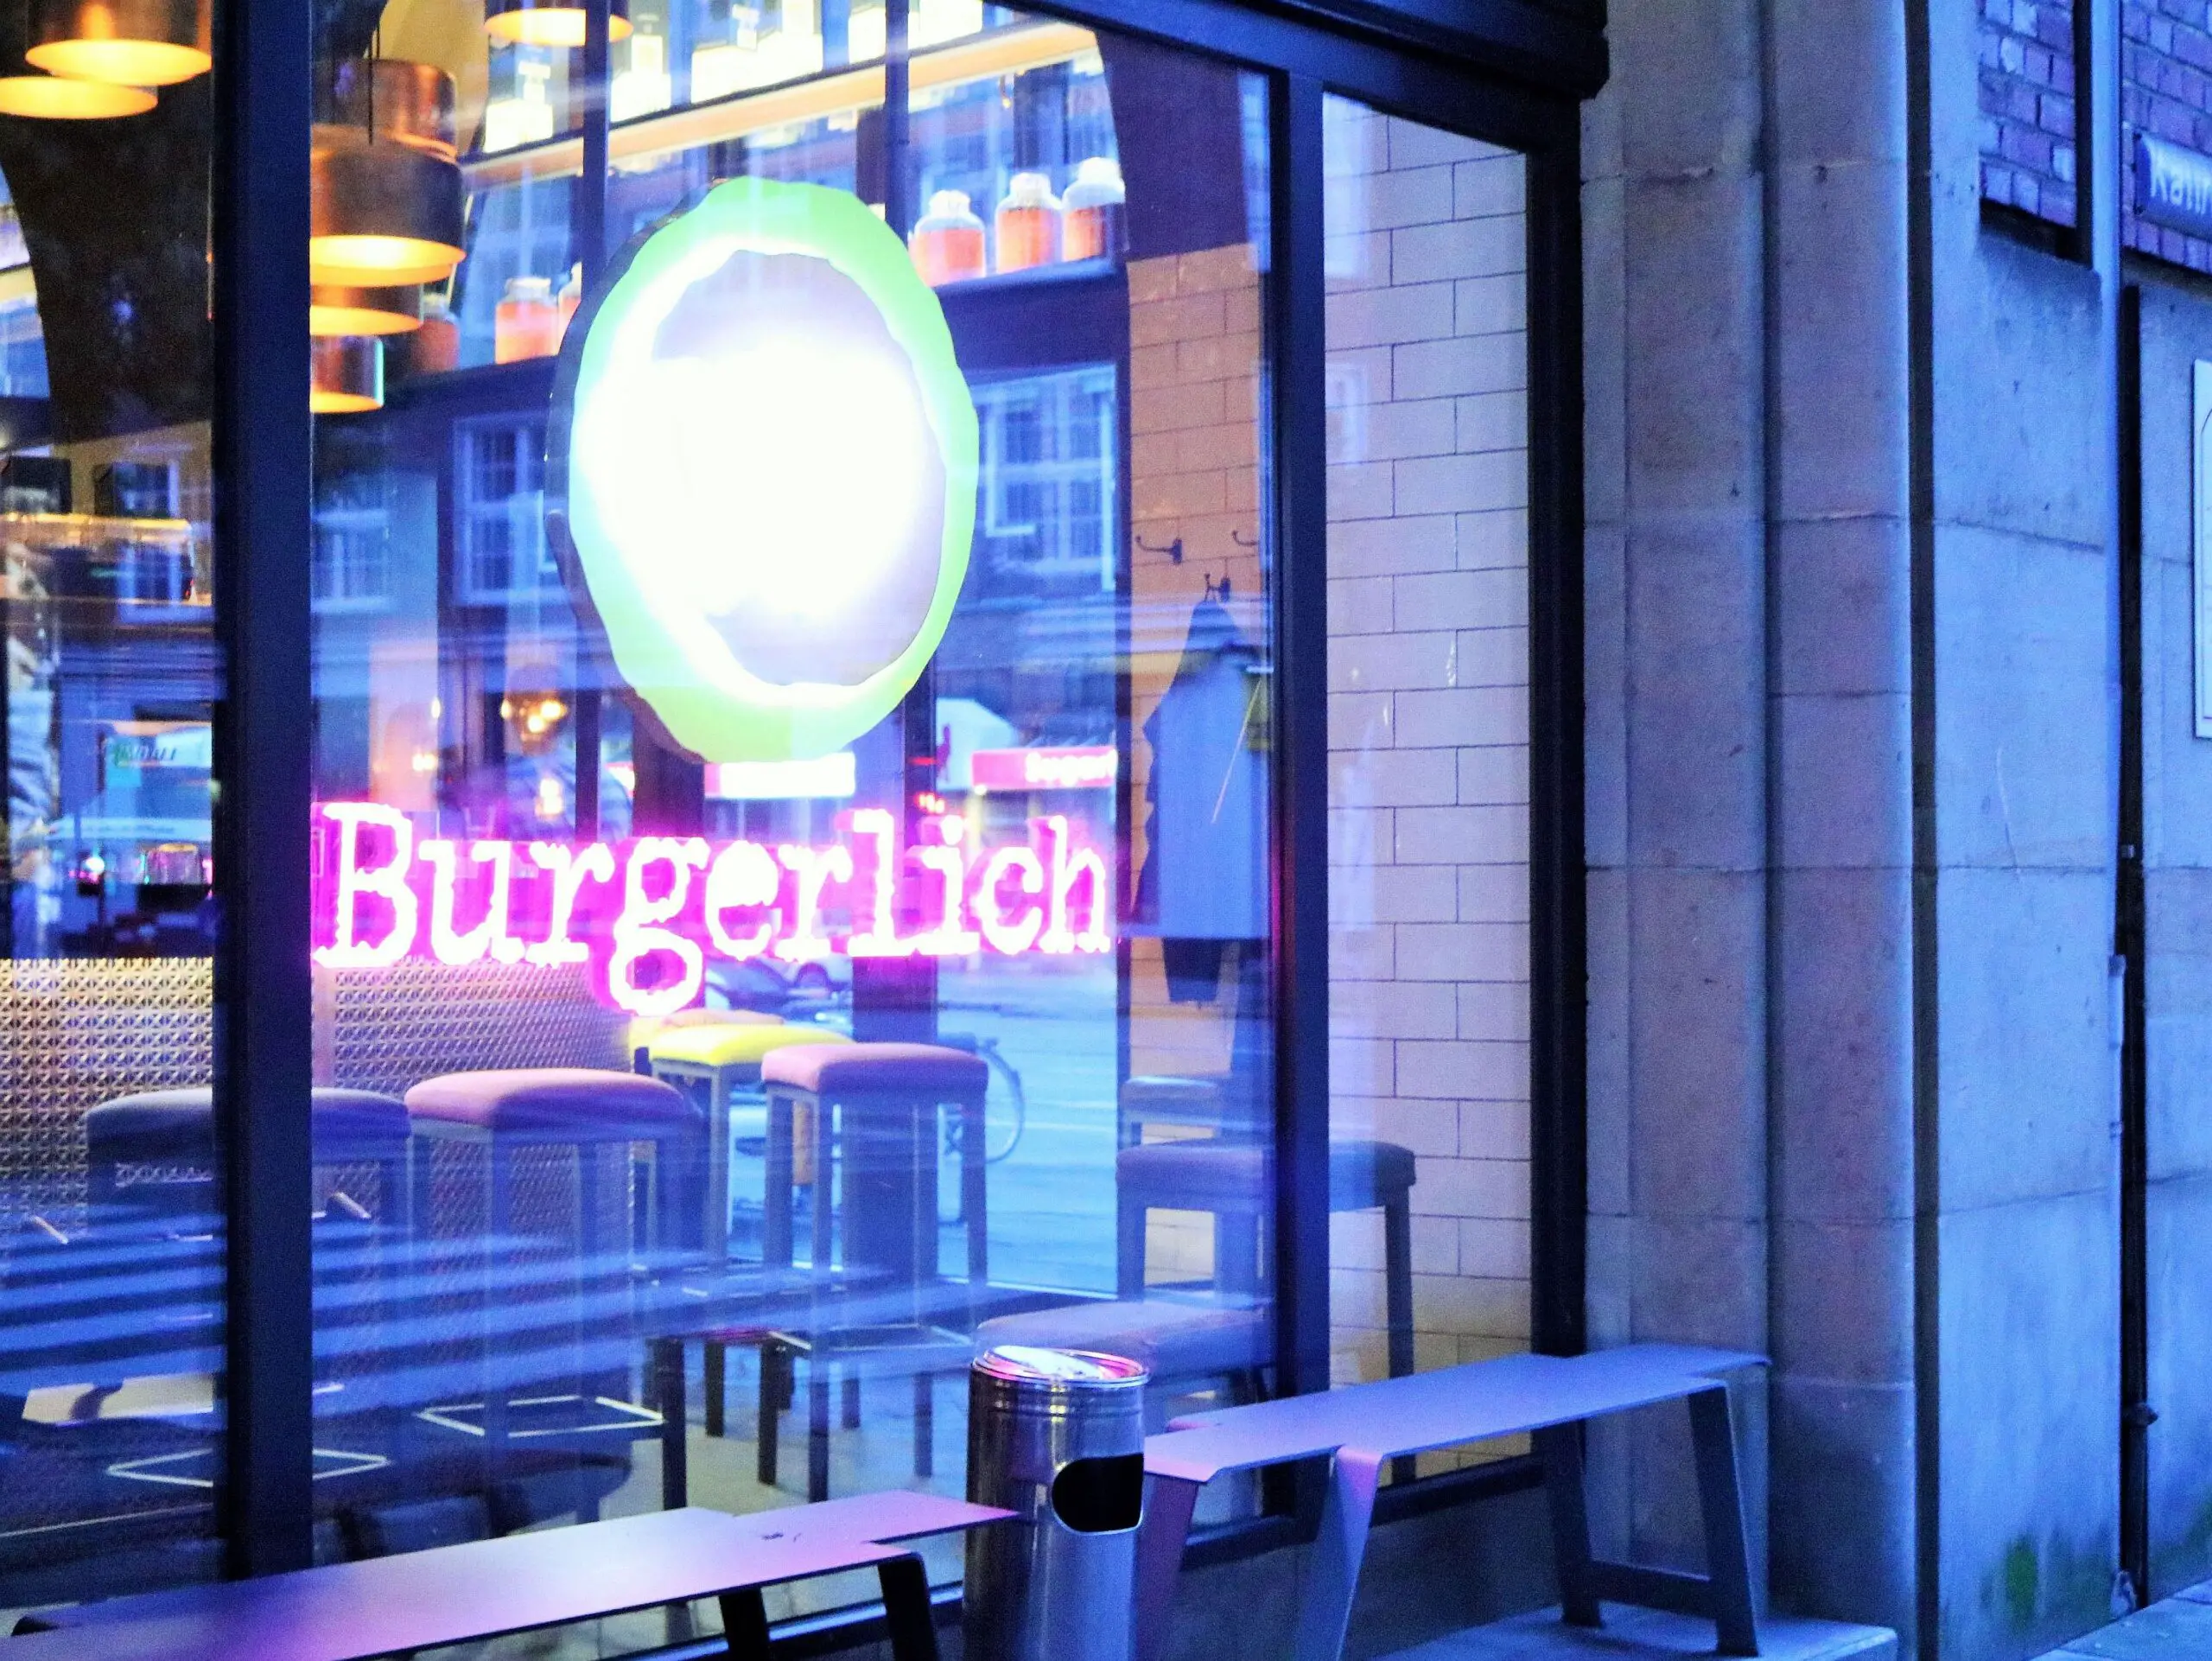 Hamburg – Burgerlich